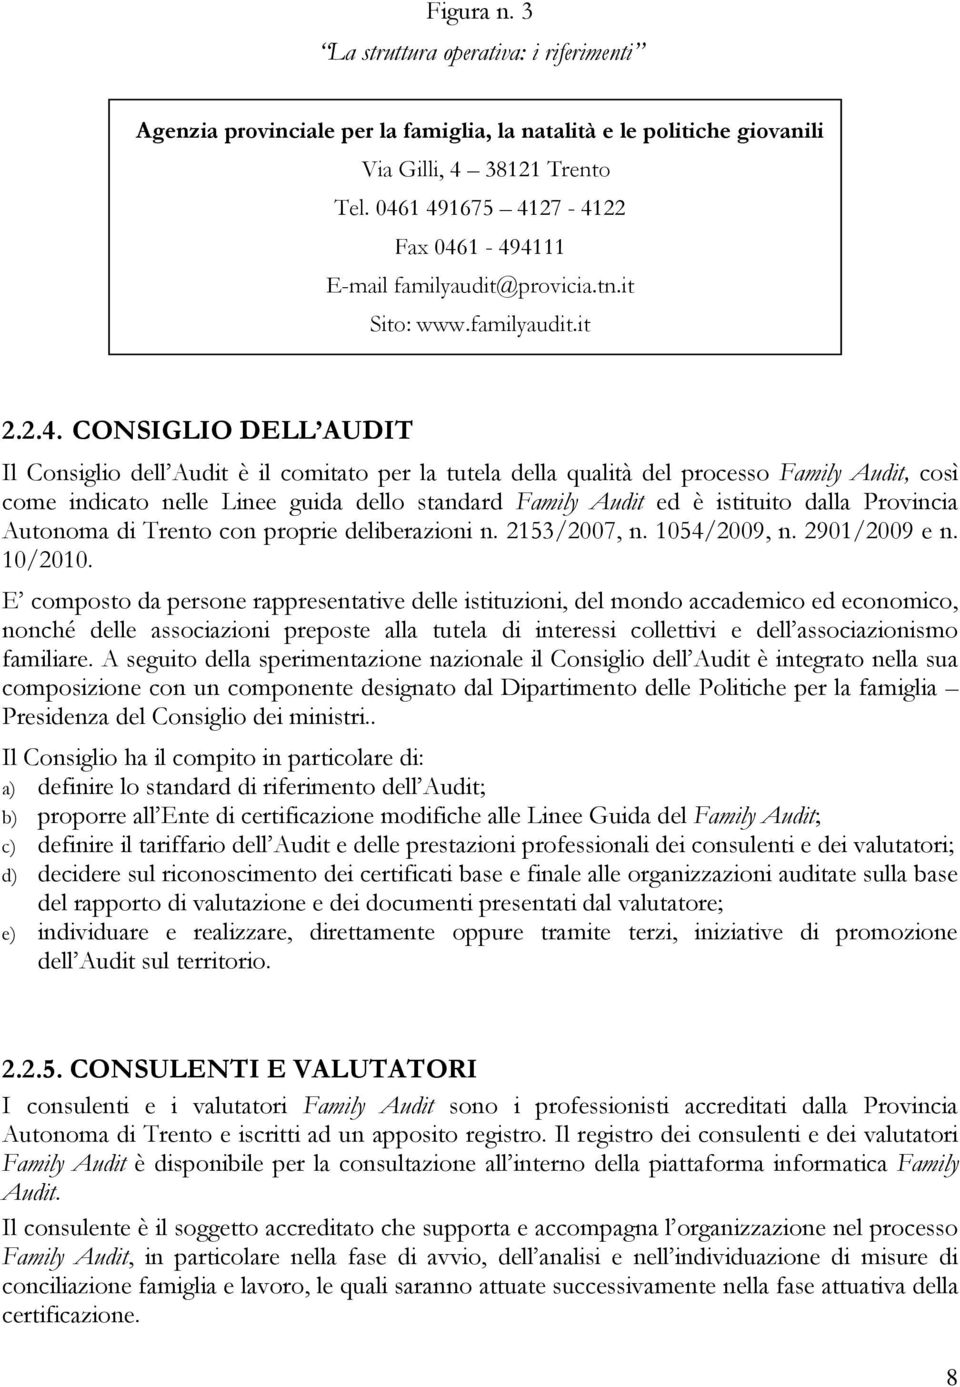 processo Family Audit, così come indicato nelle Linee guida dello standard Family Audit ed è istituito dalla Provincia Autonoma di Trento con proprie deliberazioni n. 2153/2007, n. 1054/2009, n.